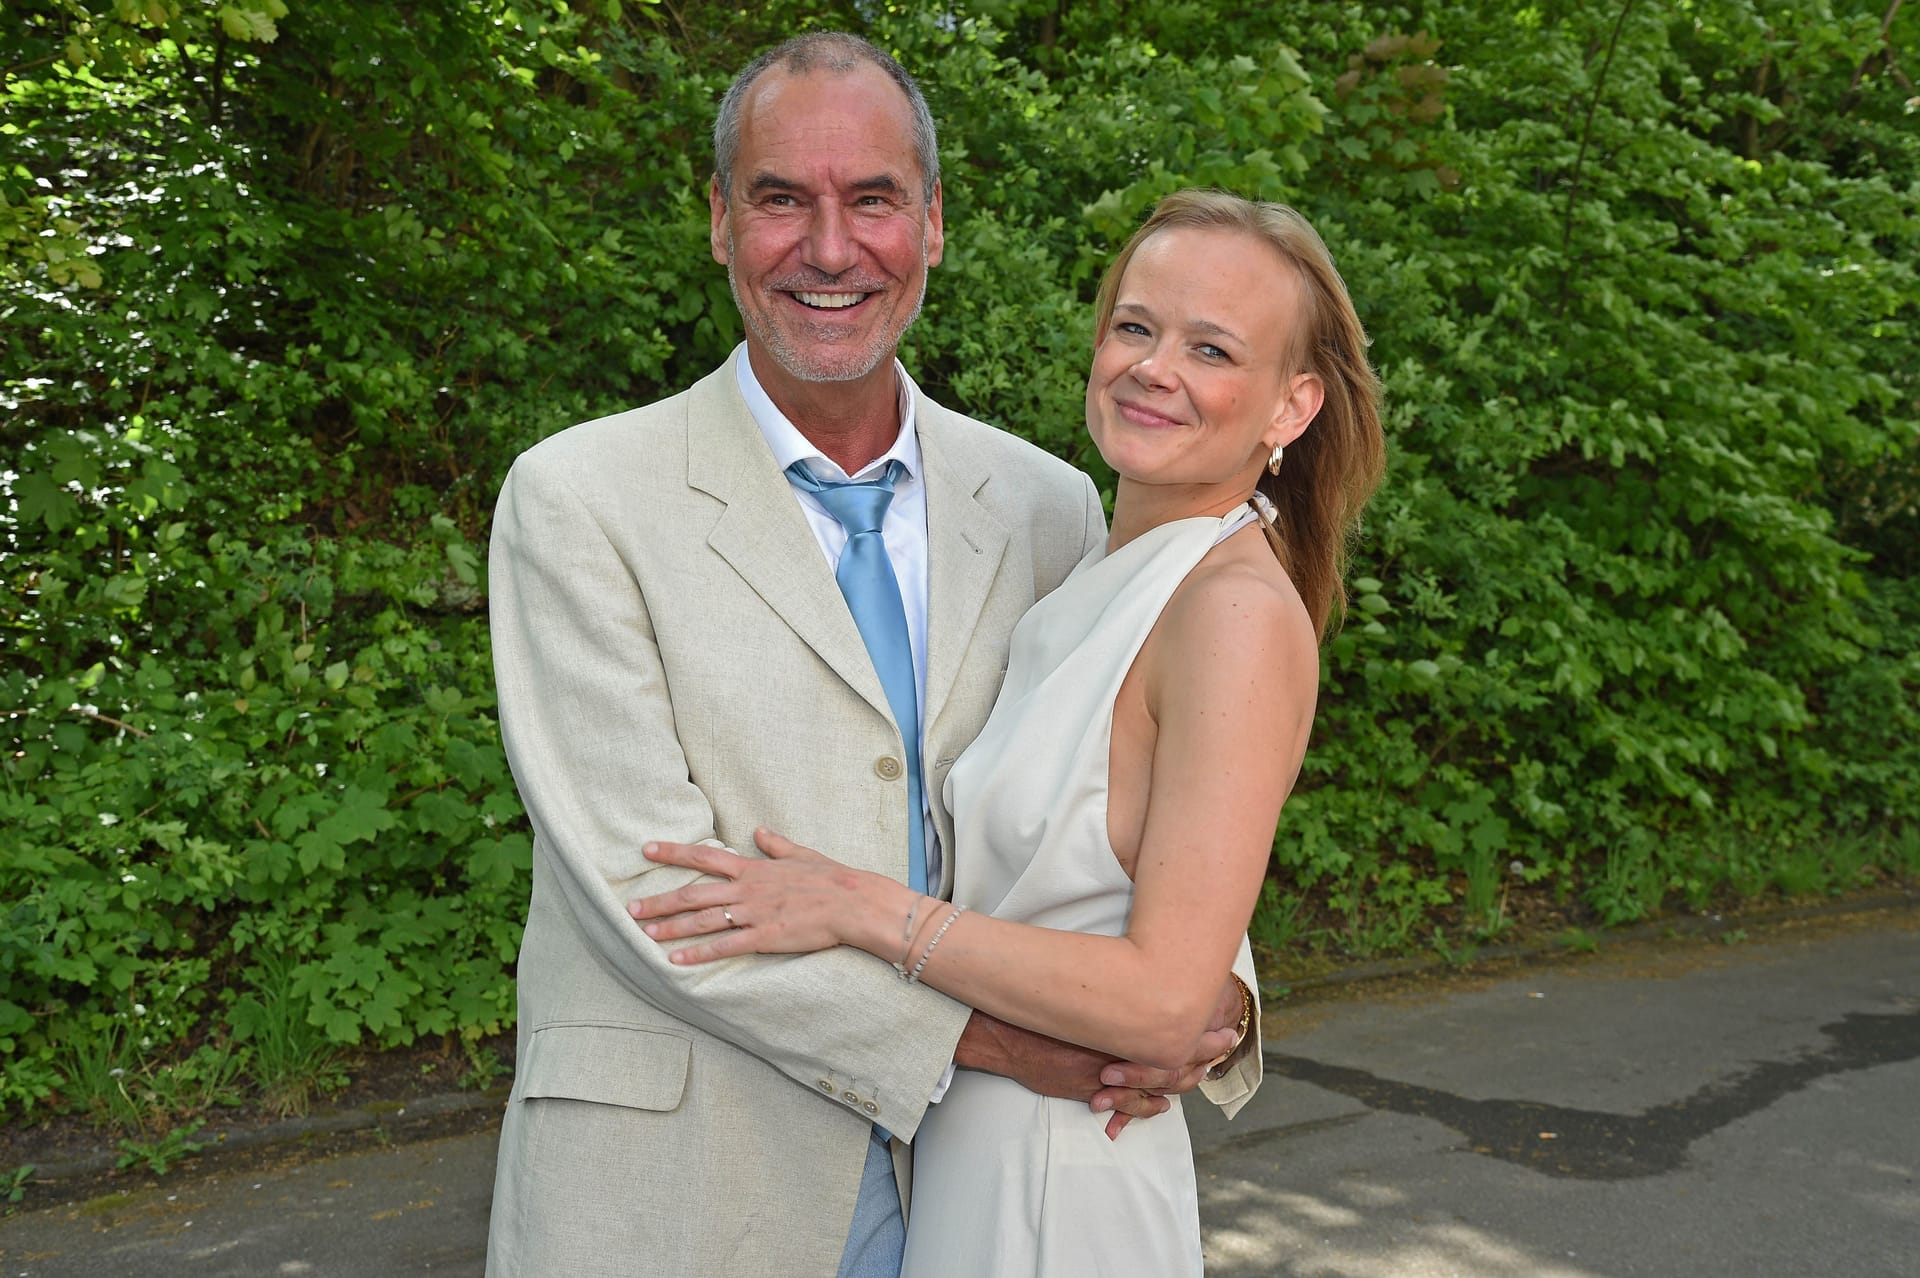 Silvan-Pierre Leirich und seine Freundin Nadine trennen 28 Jahre Altersunterschied.